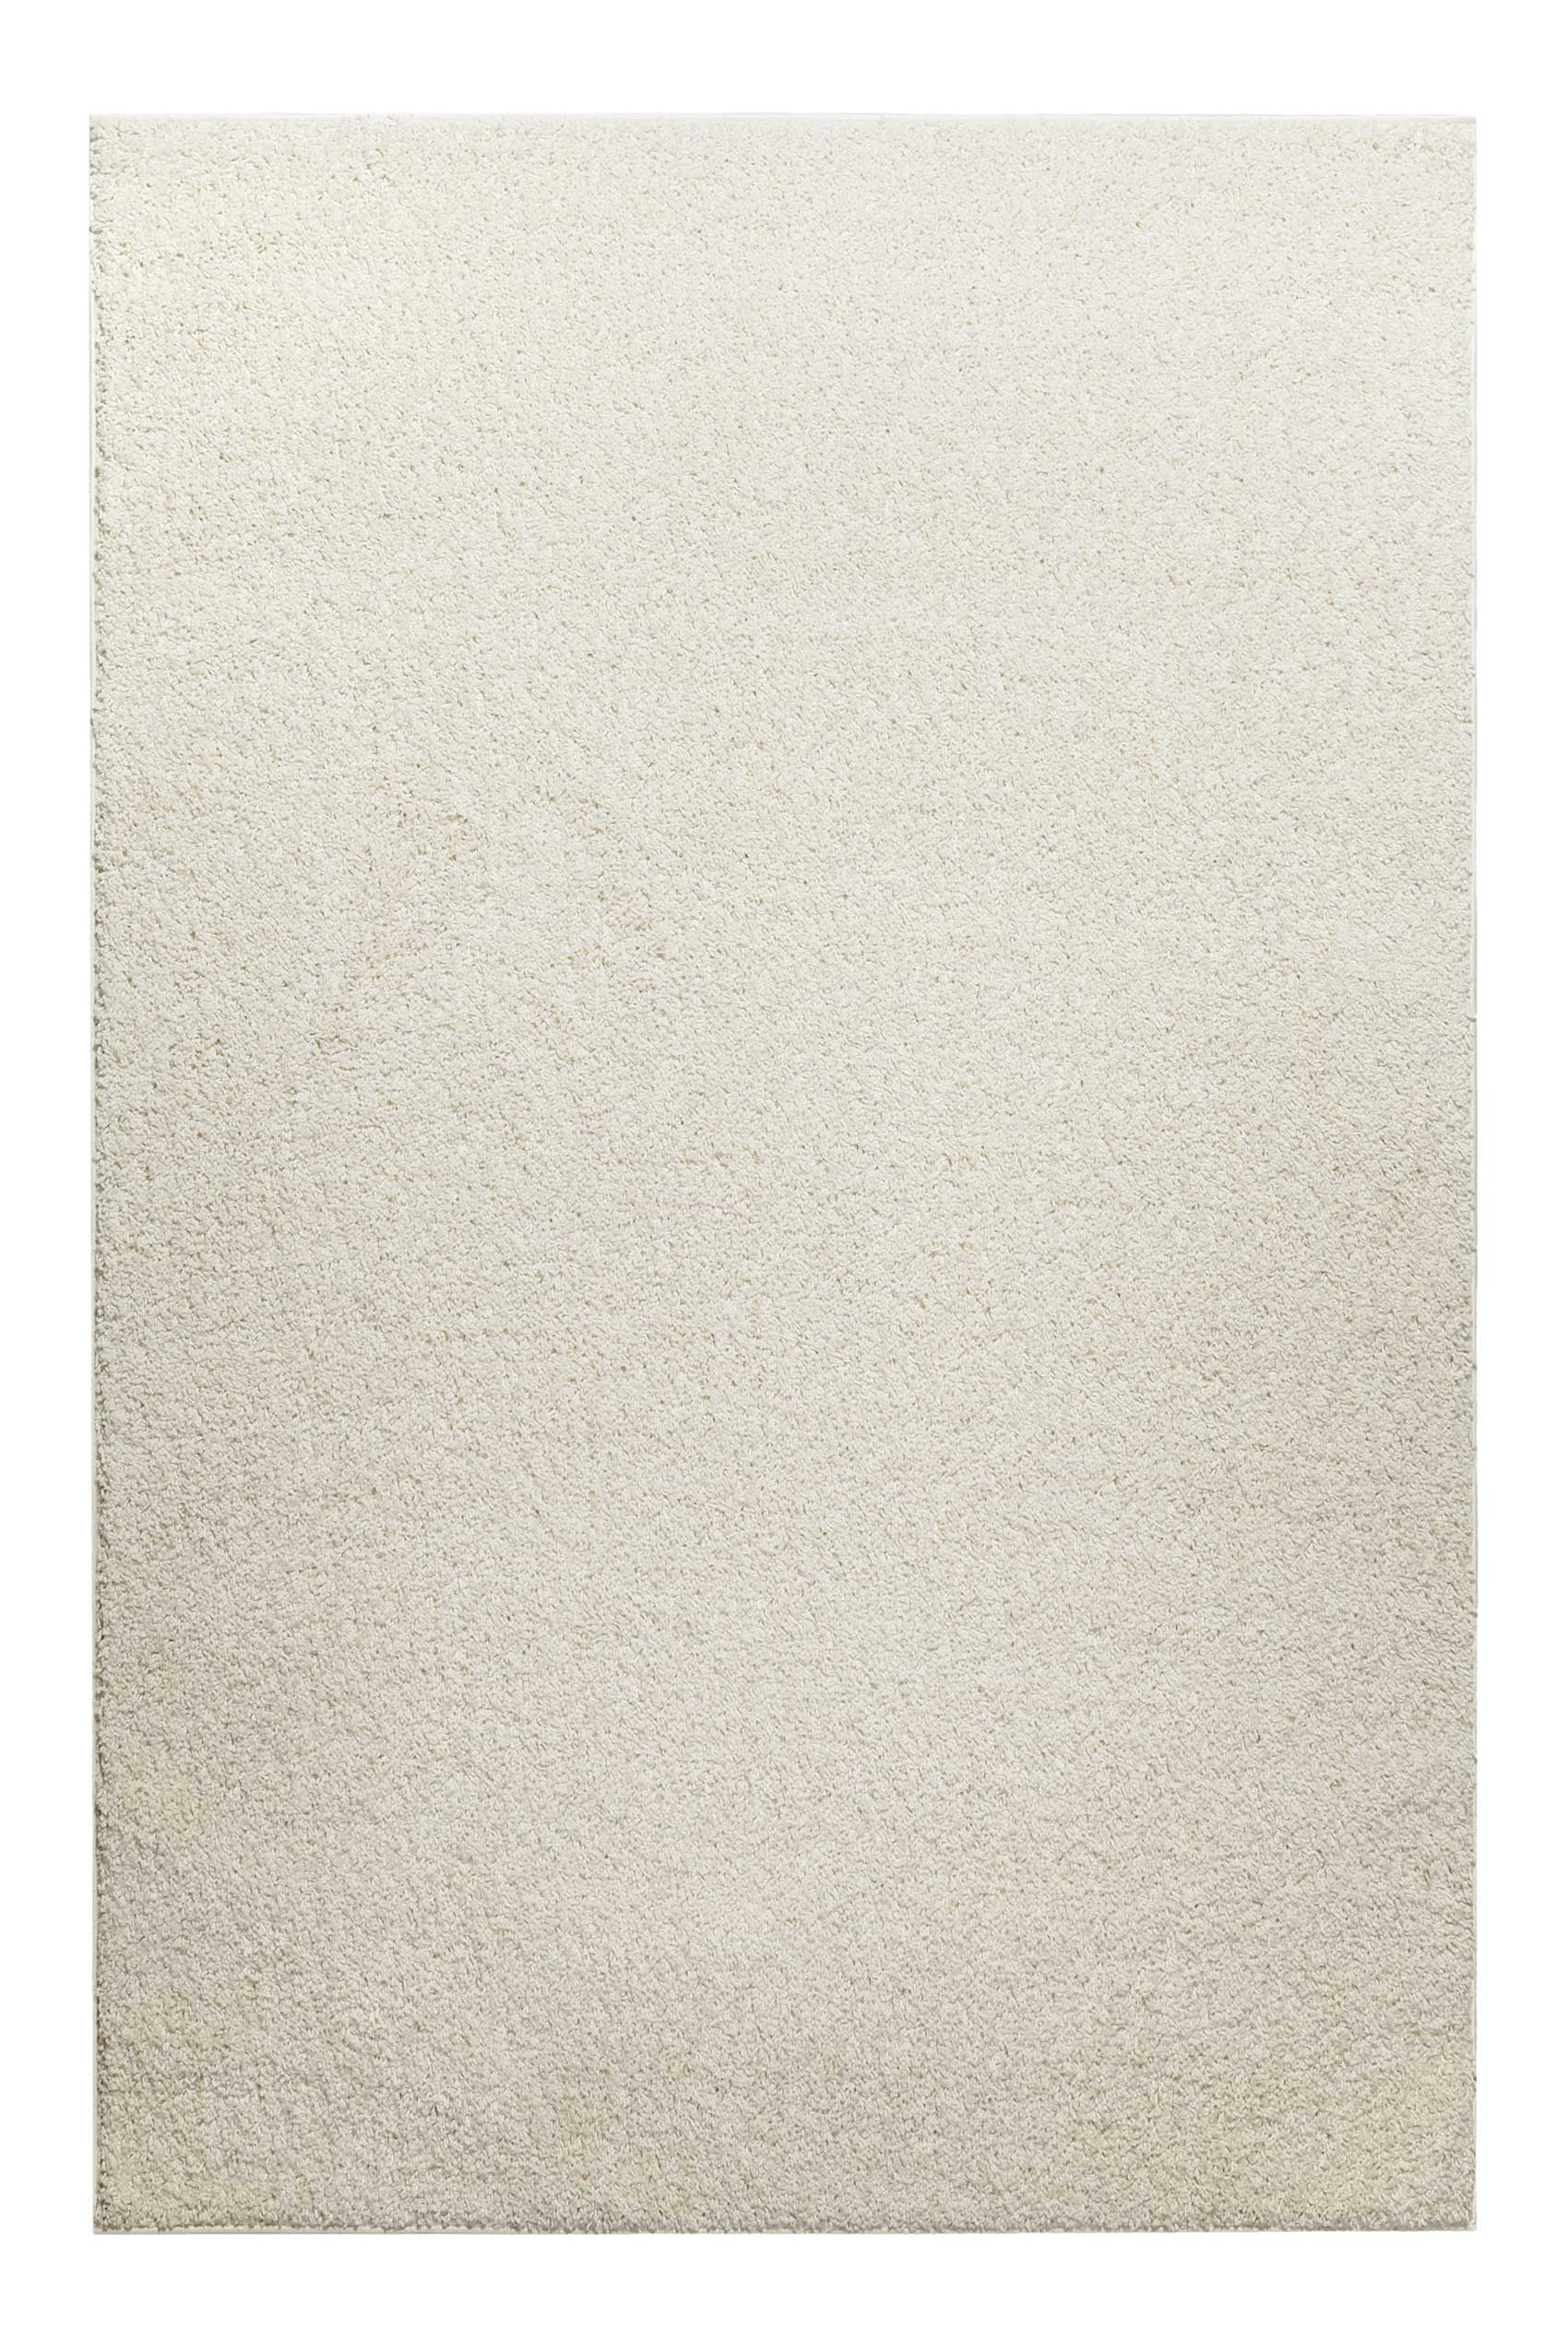 Teppich Creme Weiß Hochflor » Gino « Homie Living - Ansicht 1